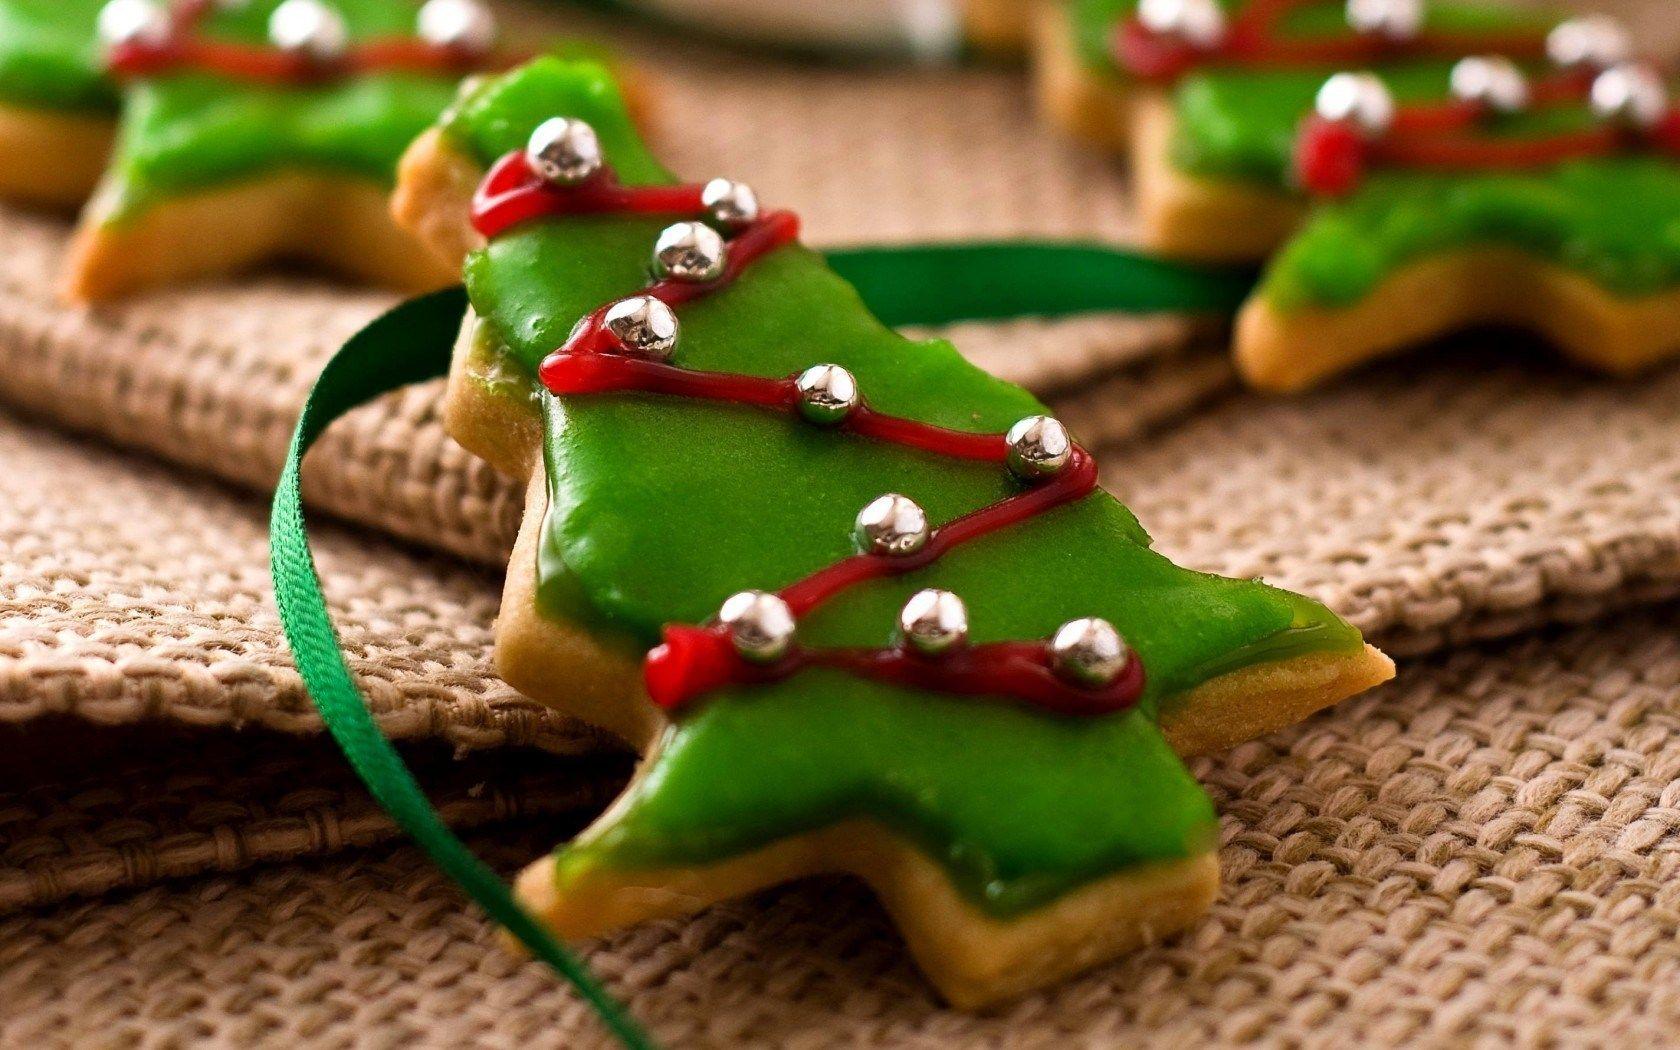 Cute Christmas Cookies